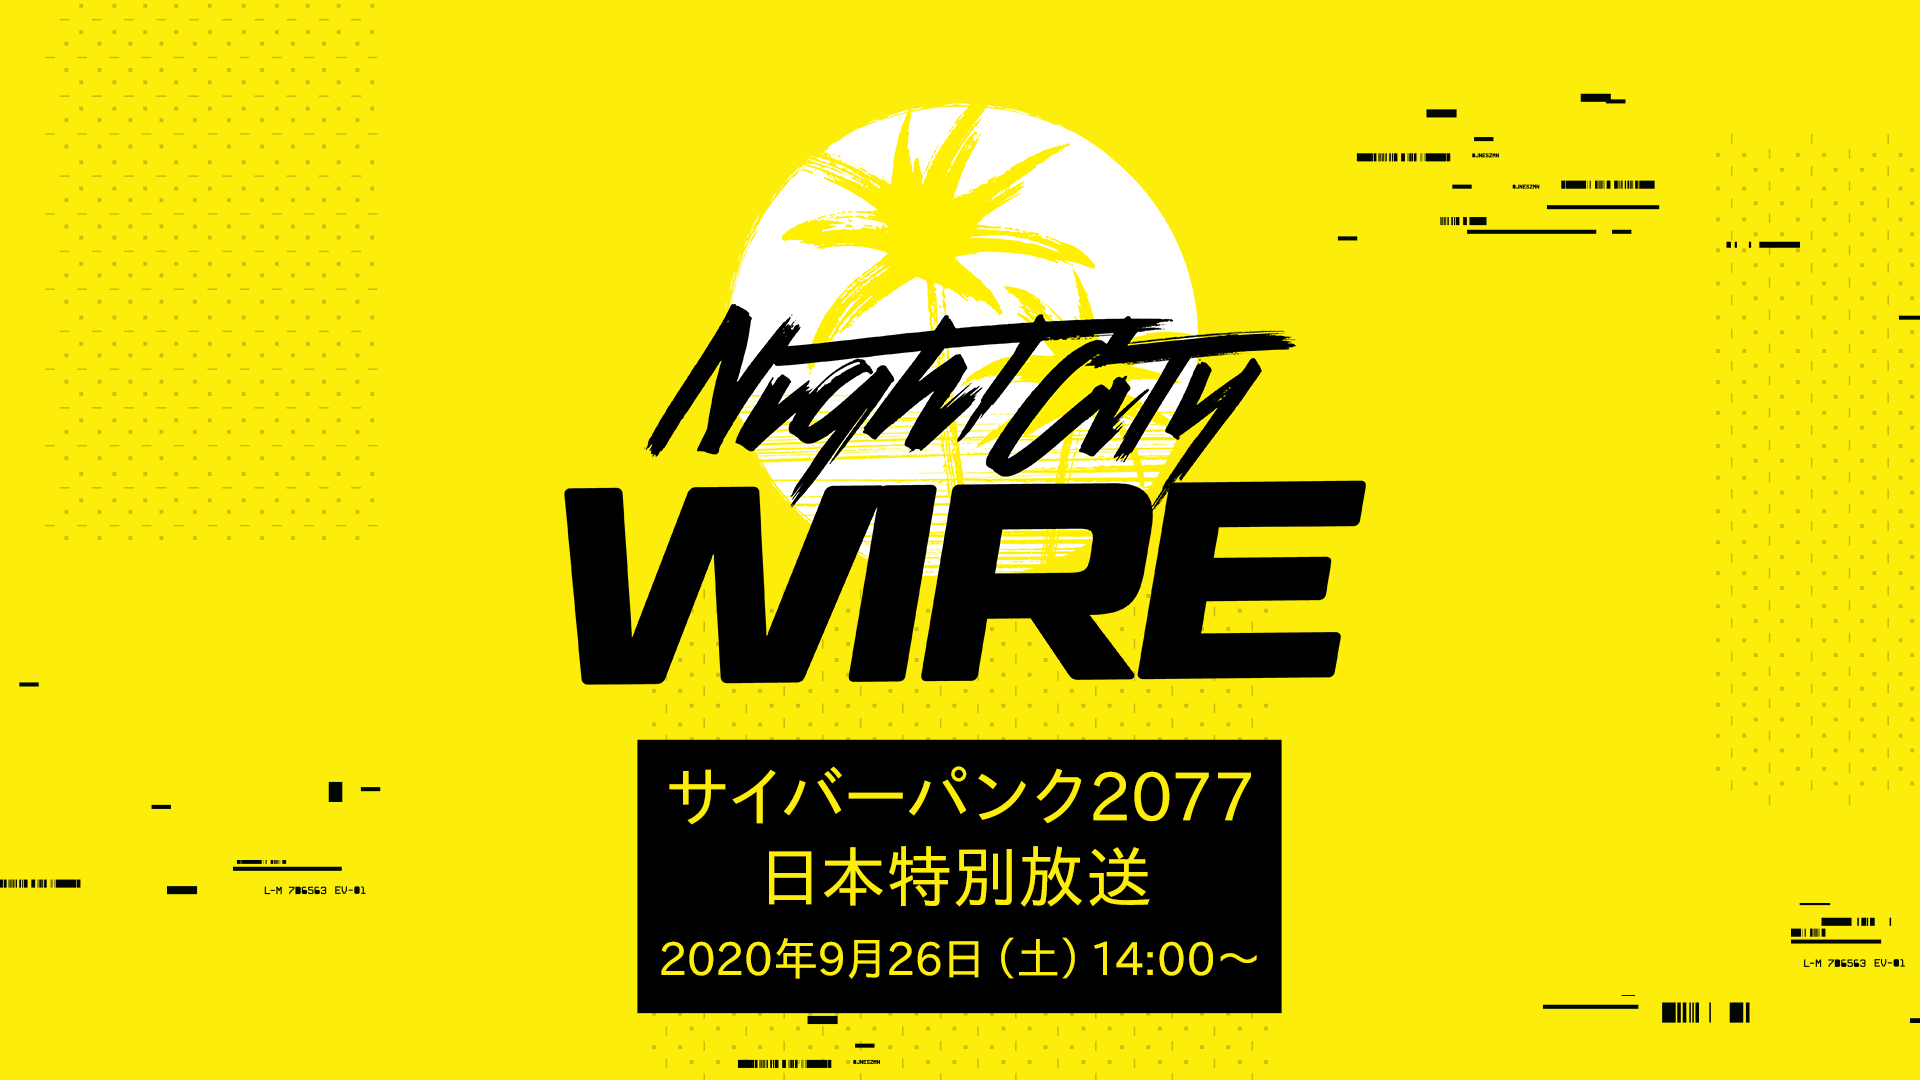 Tgs オンライン 内で日本だけの特別な Night City Wire が9月26日14時より放送 2bro のおついちさんがゲスト出演 Tgs Thumbnail